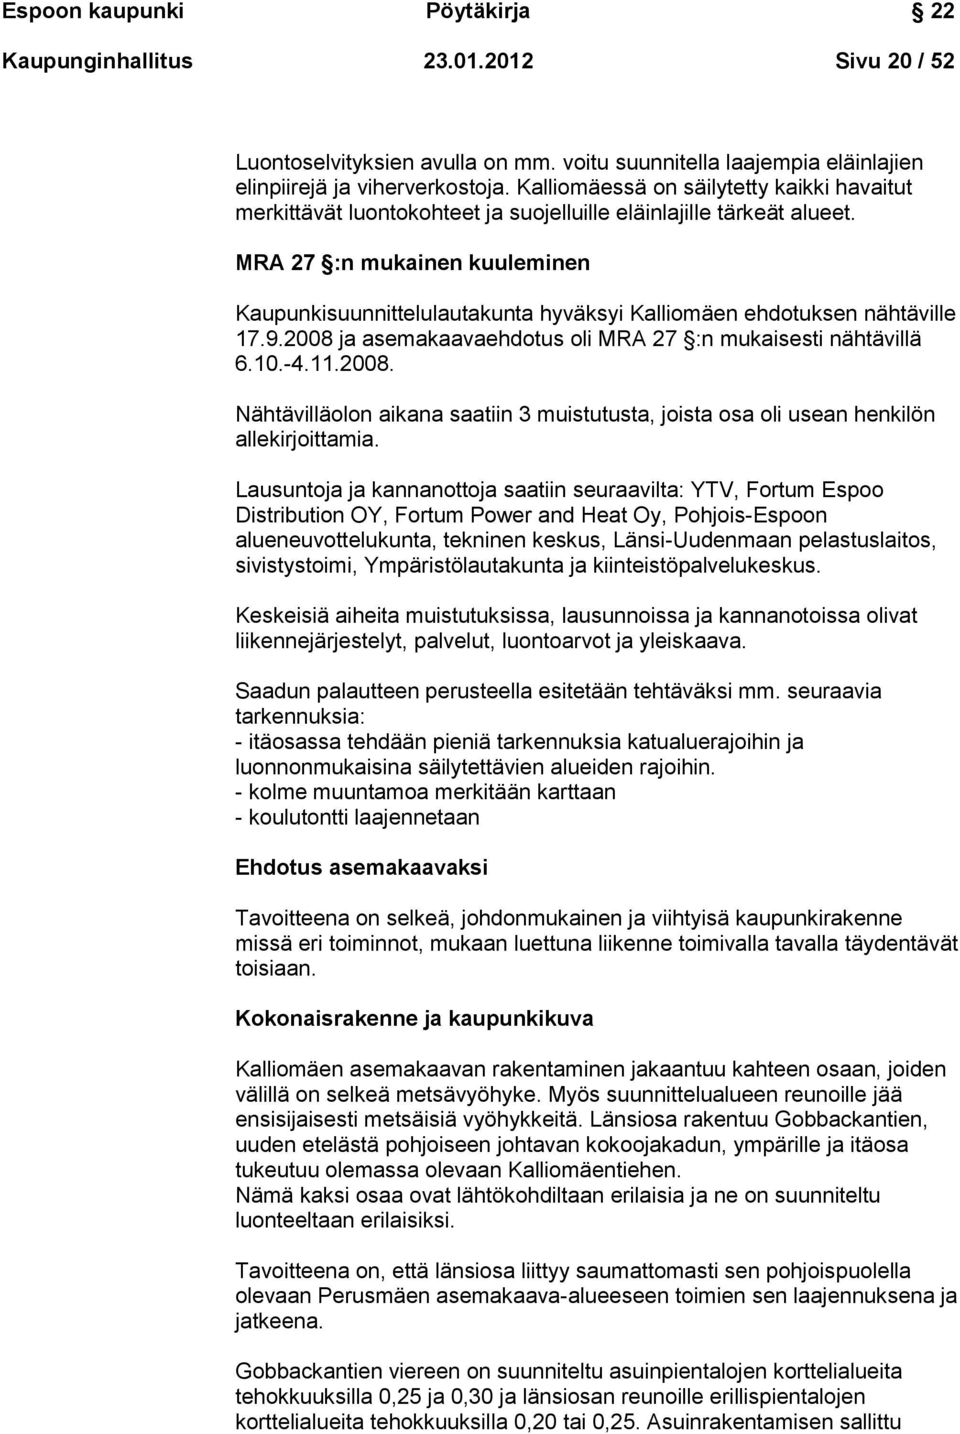 MRA 27 :n mukainen kuuleminen Kaupunkisuunnittelulautakunta hyväksyi Kalliomäen ehdotuksen nähtäville 17.9.2008 